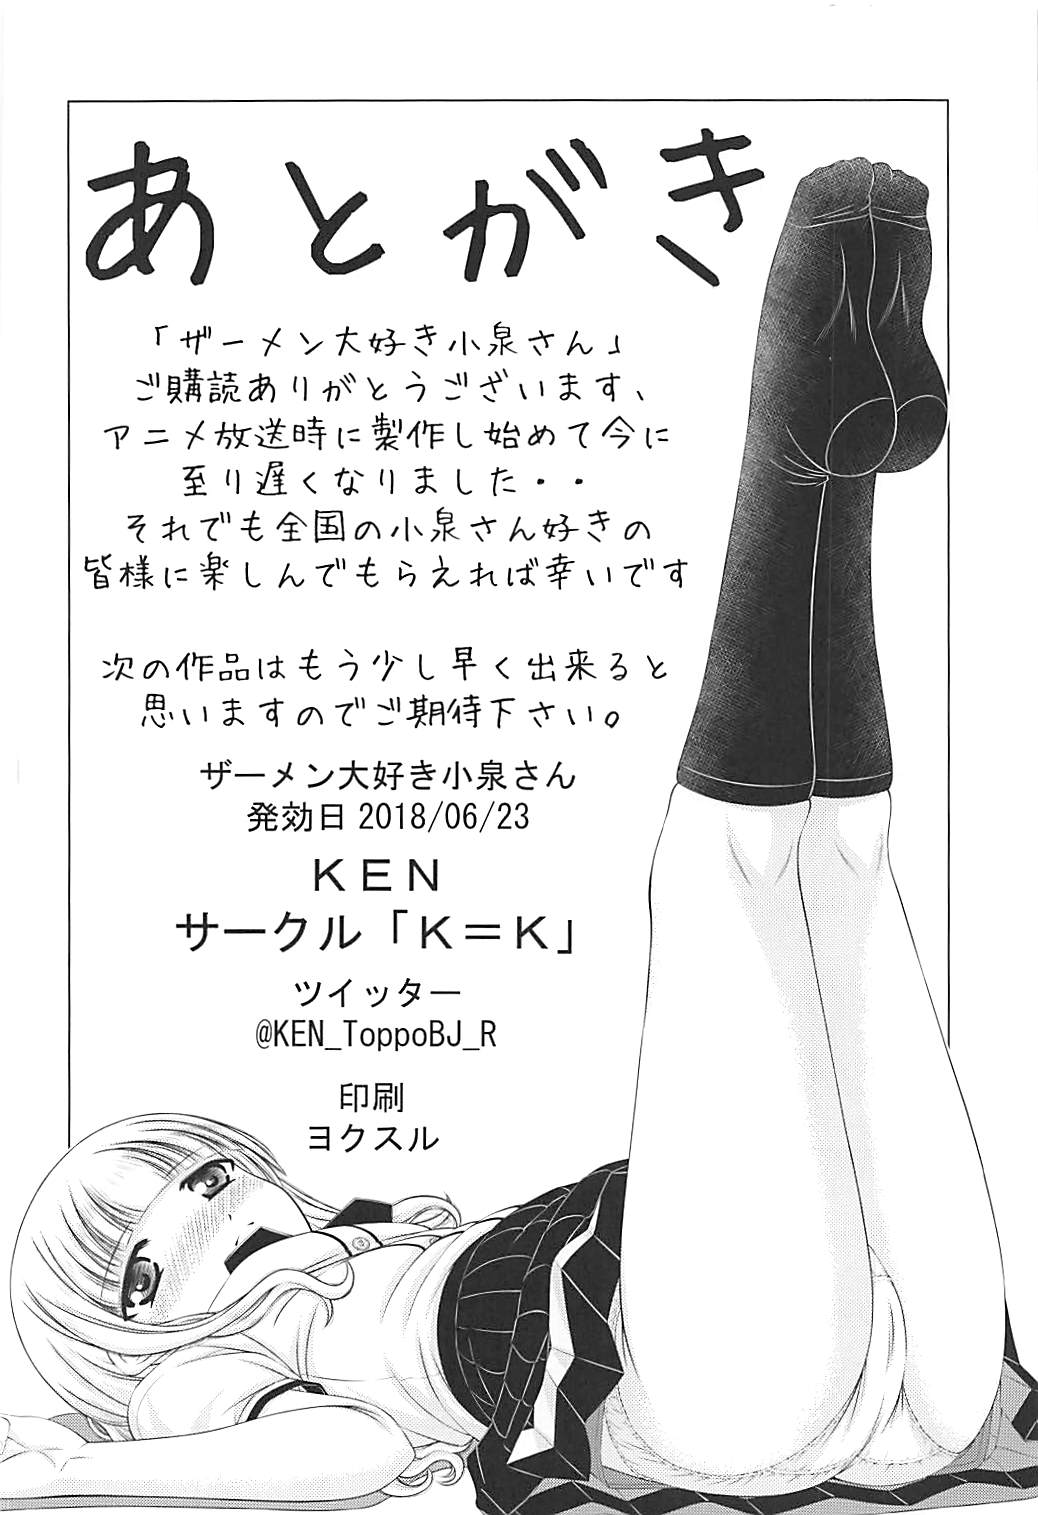 [K=K (KEN)] Semen Daisuki Koizumi-san (Ramen Daisuki Koizumi-san) page 29 full